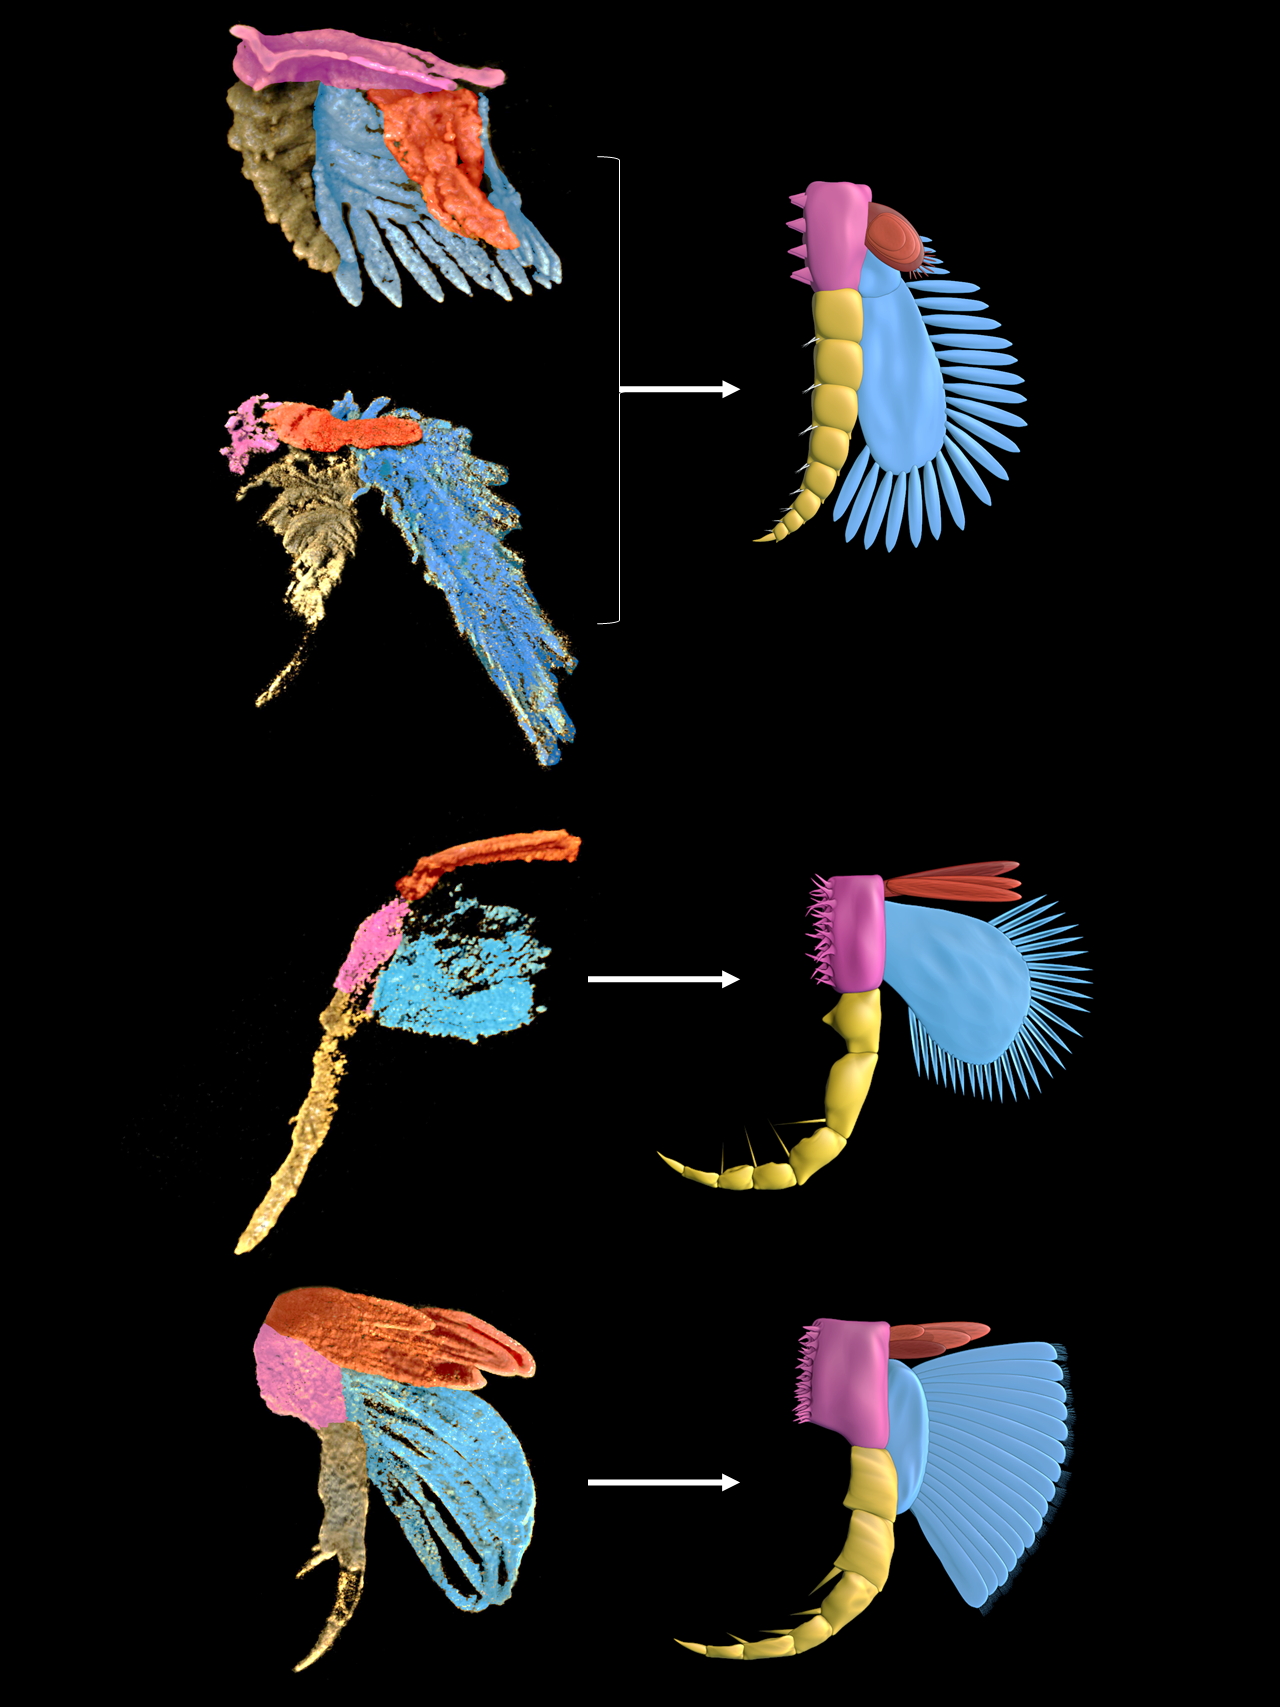 插图一：左侧为使用显微CT及三维复原技术从化石中提取的4个澄江节肢动物物种的腿肢三维模型（从上往下分别为：迷人林乔利虫、肥胖林乔利虫、刺状纳罗虫、异形网面虫），